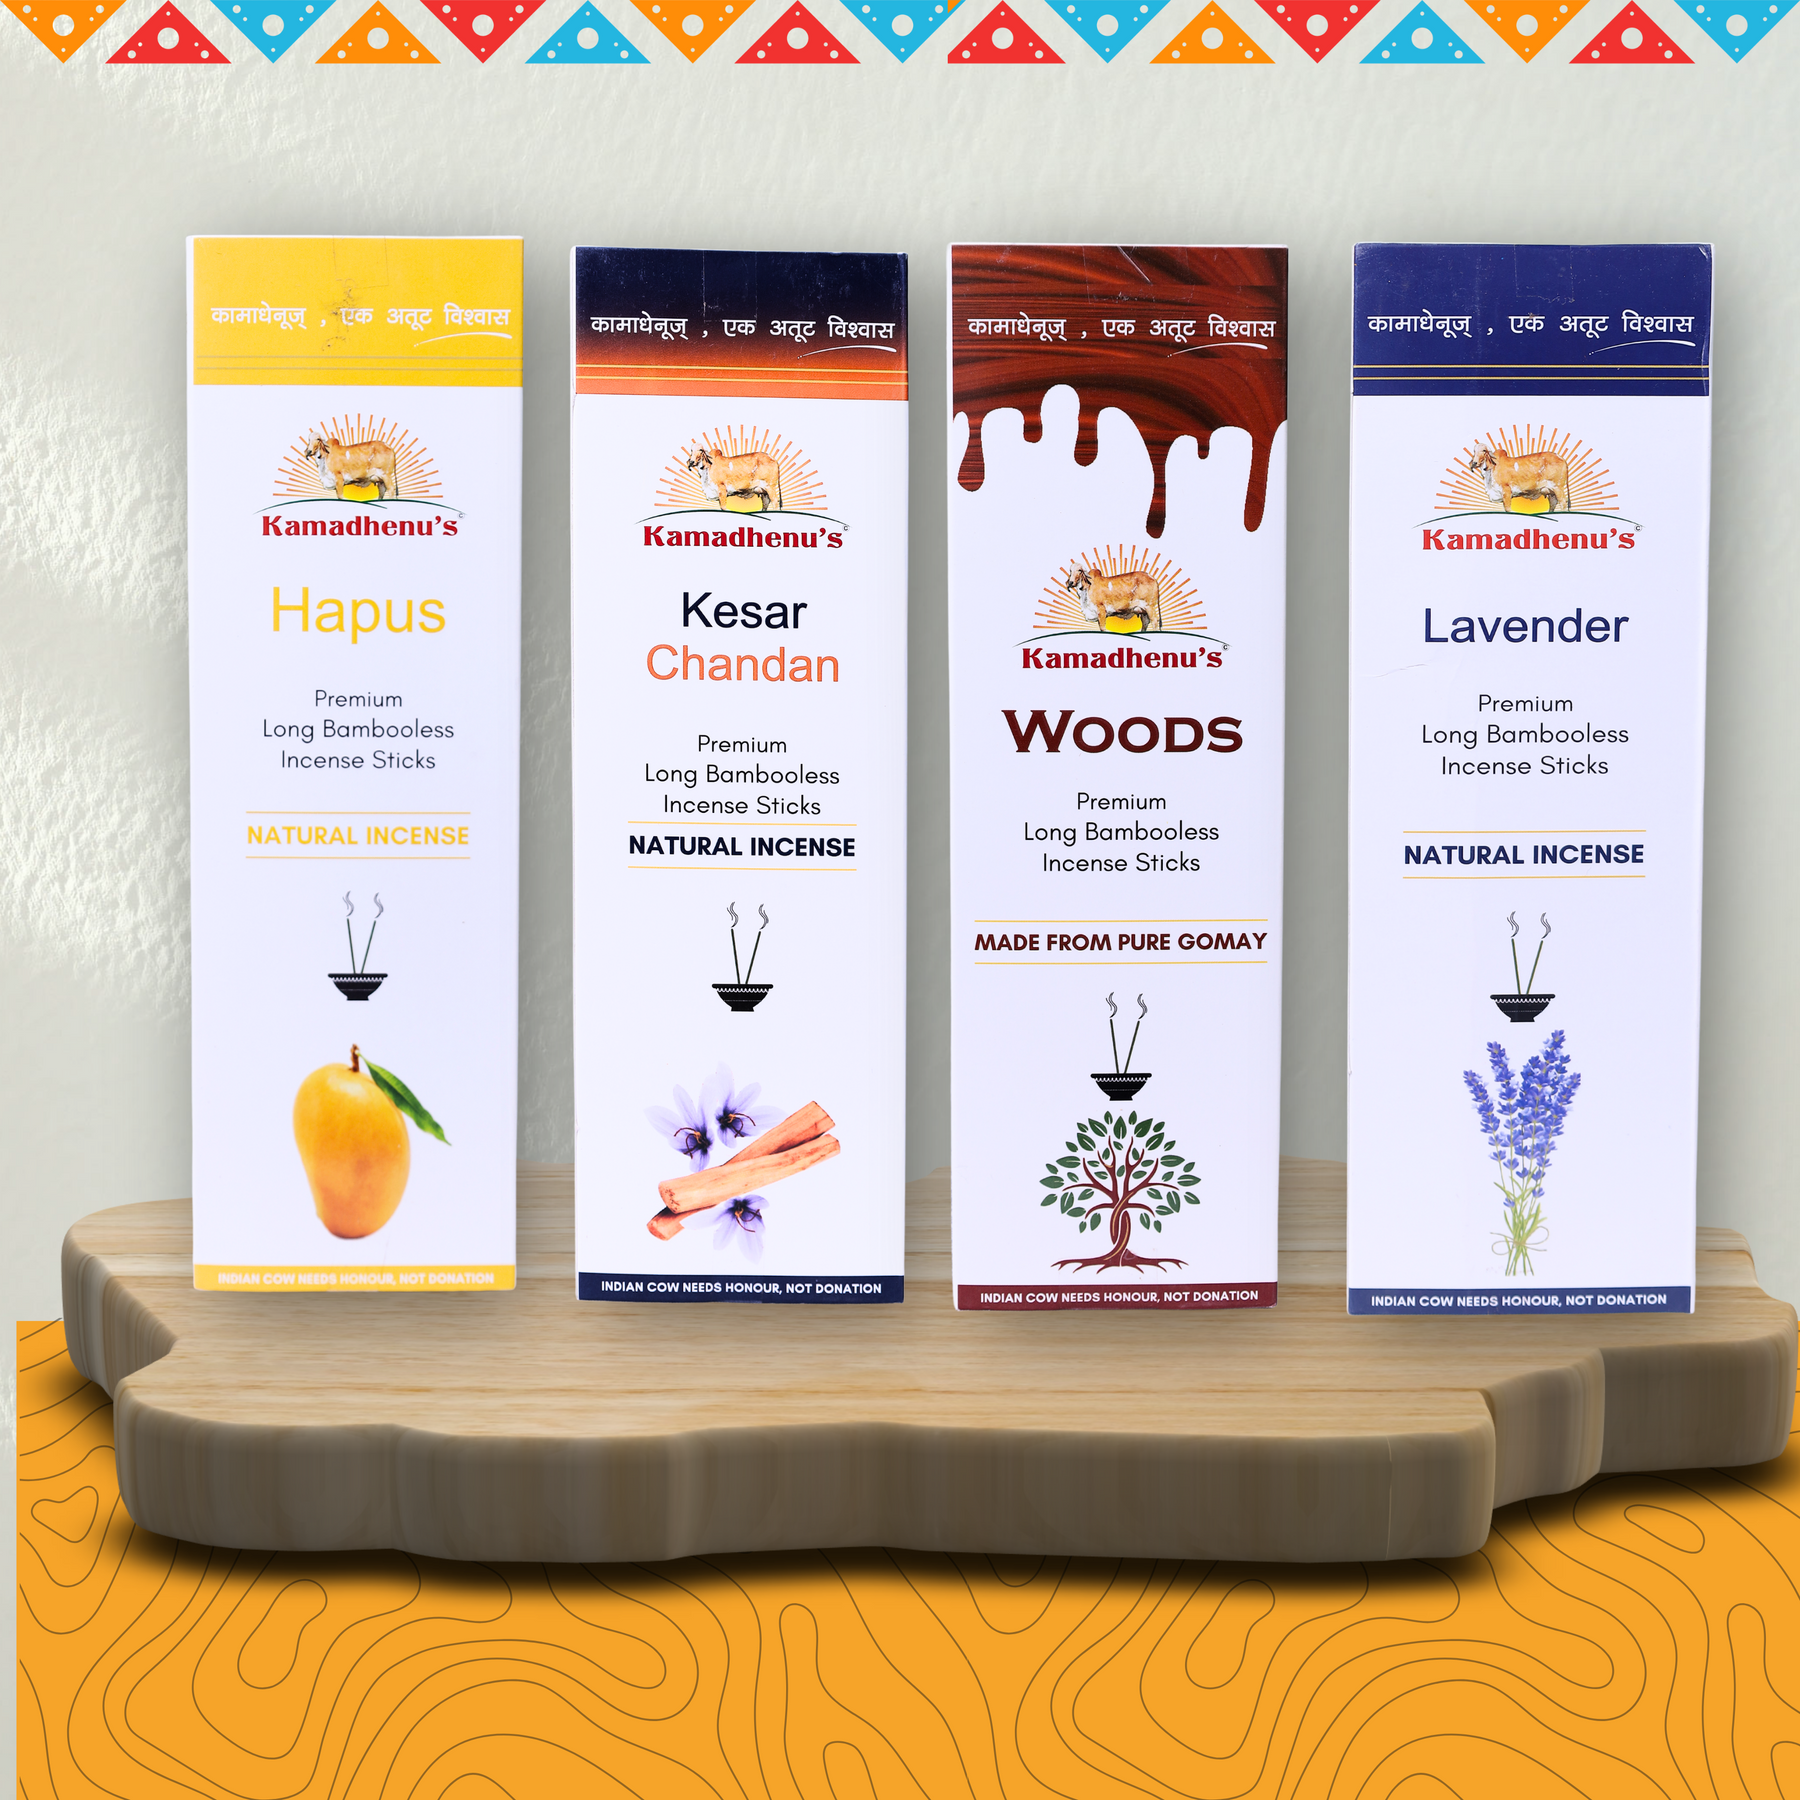 Kamadhenu's Premium Long Bambooless Incense Sticks Combo (Hapus,Kesar Chandan,Woods,Lavendar)